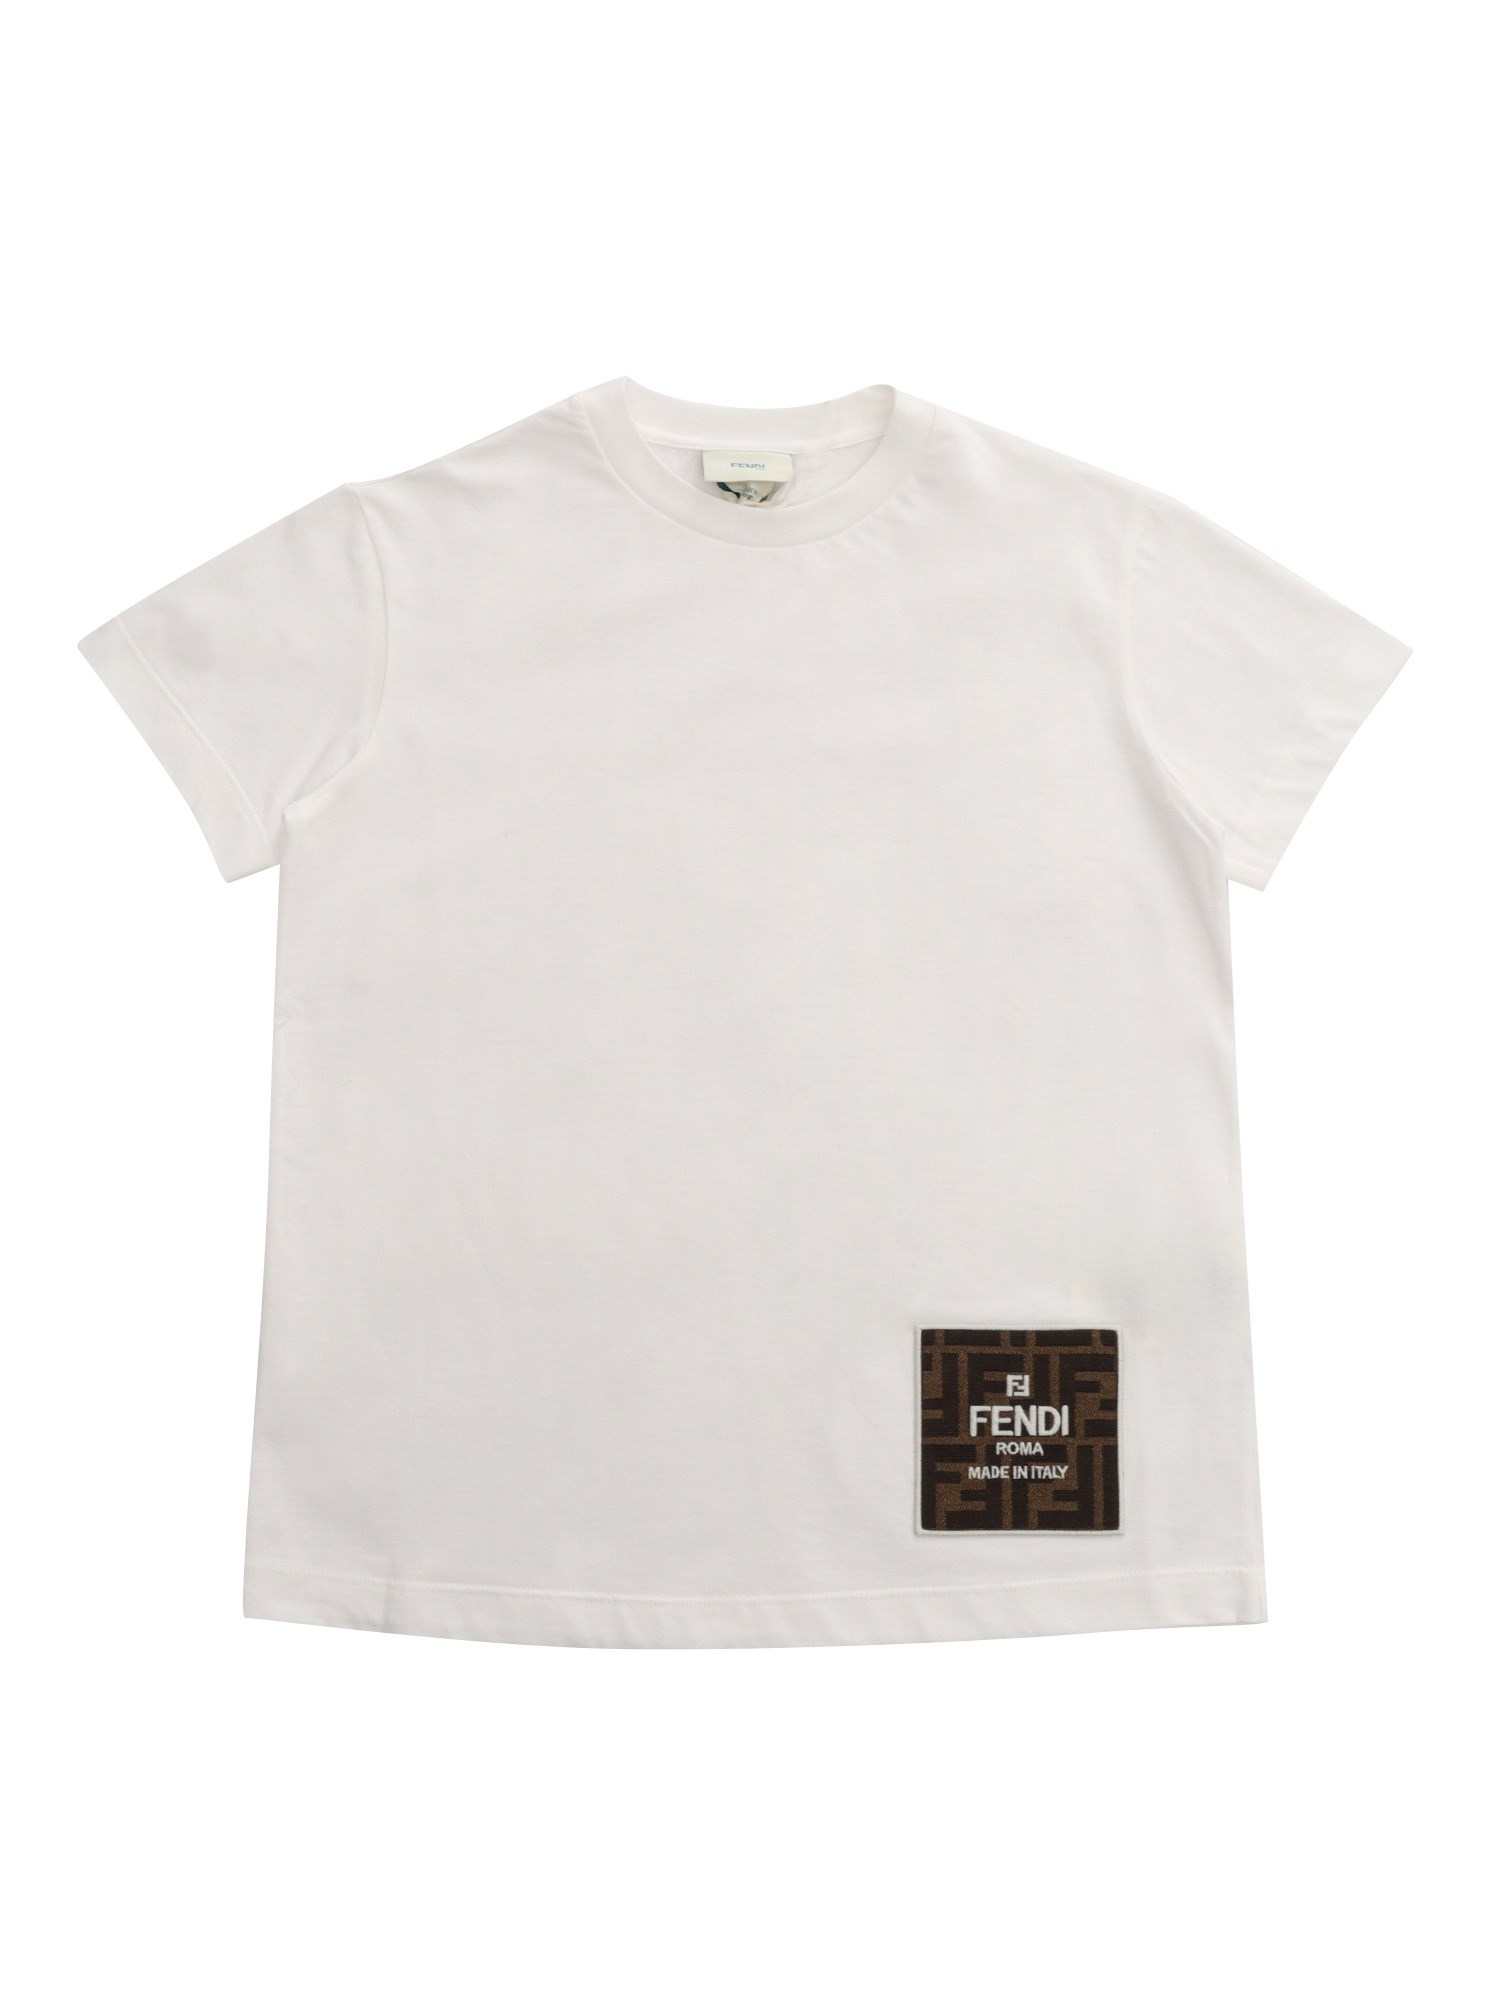 Fendi Jr White Fendi T-shirt